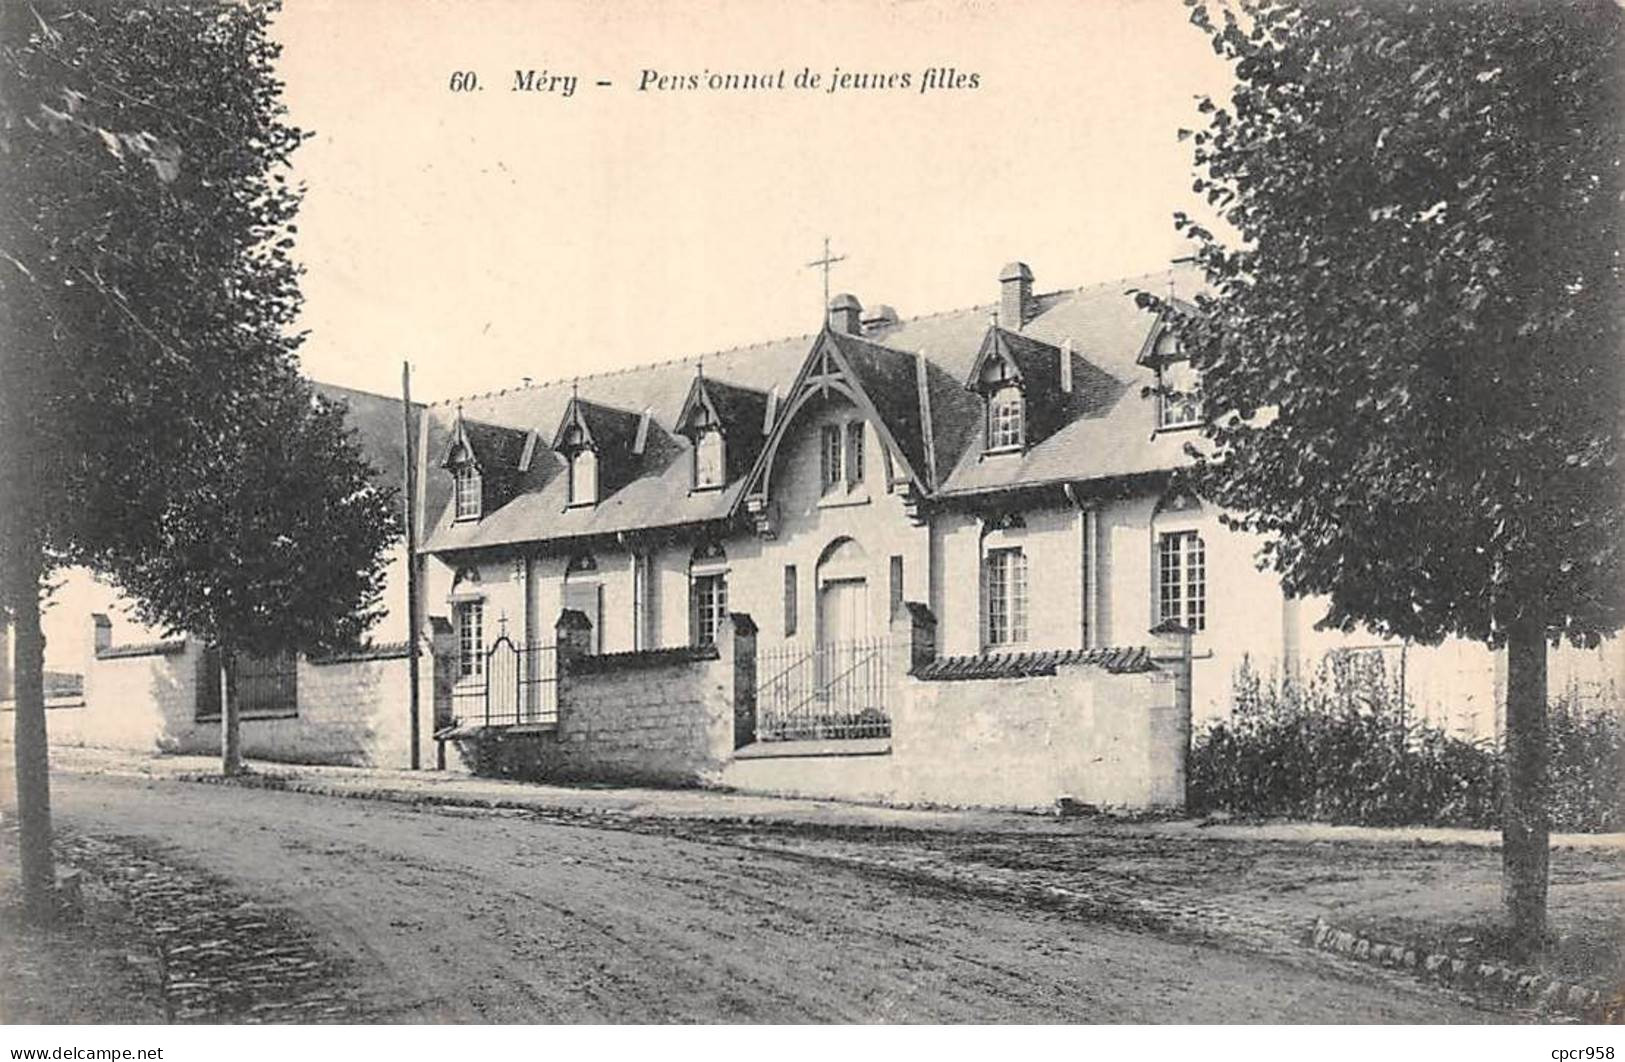 95 - MERY - SAN52256 - Pensionnat De Jeunes Filles - Mery Sur Oise